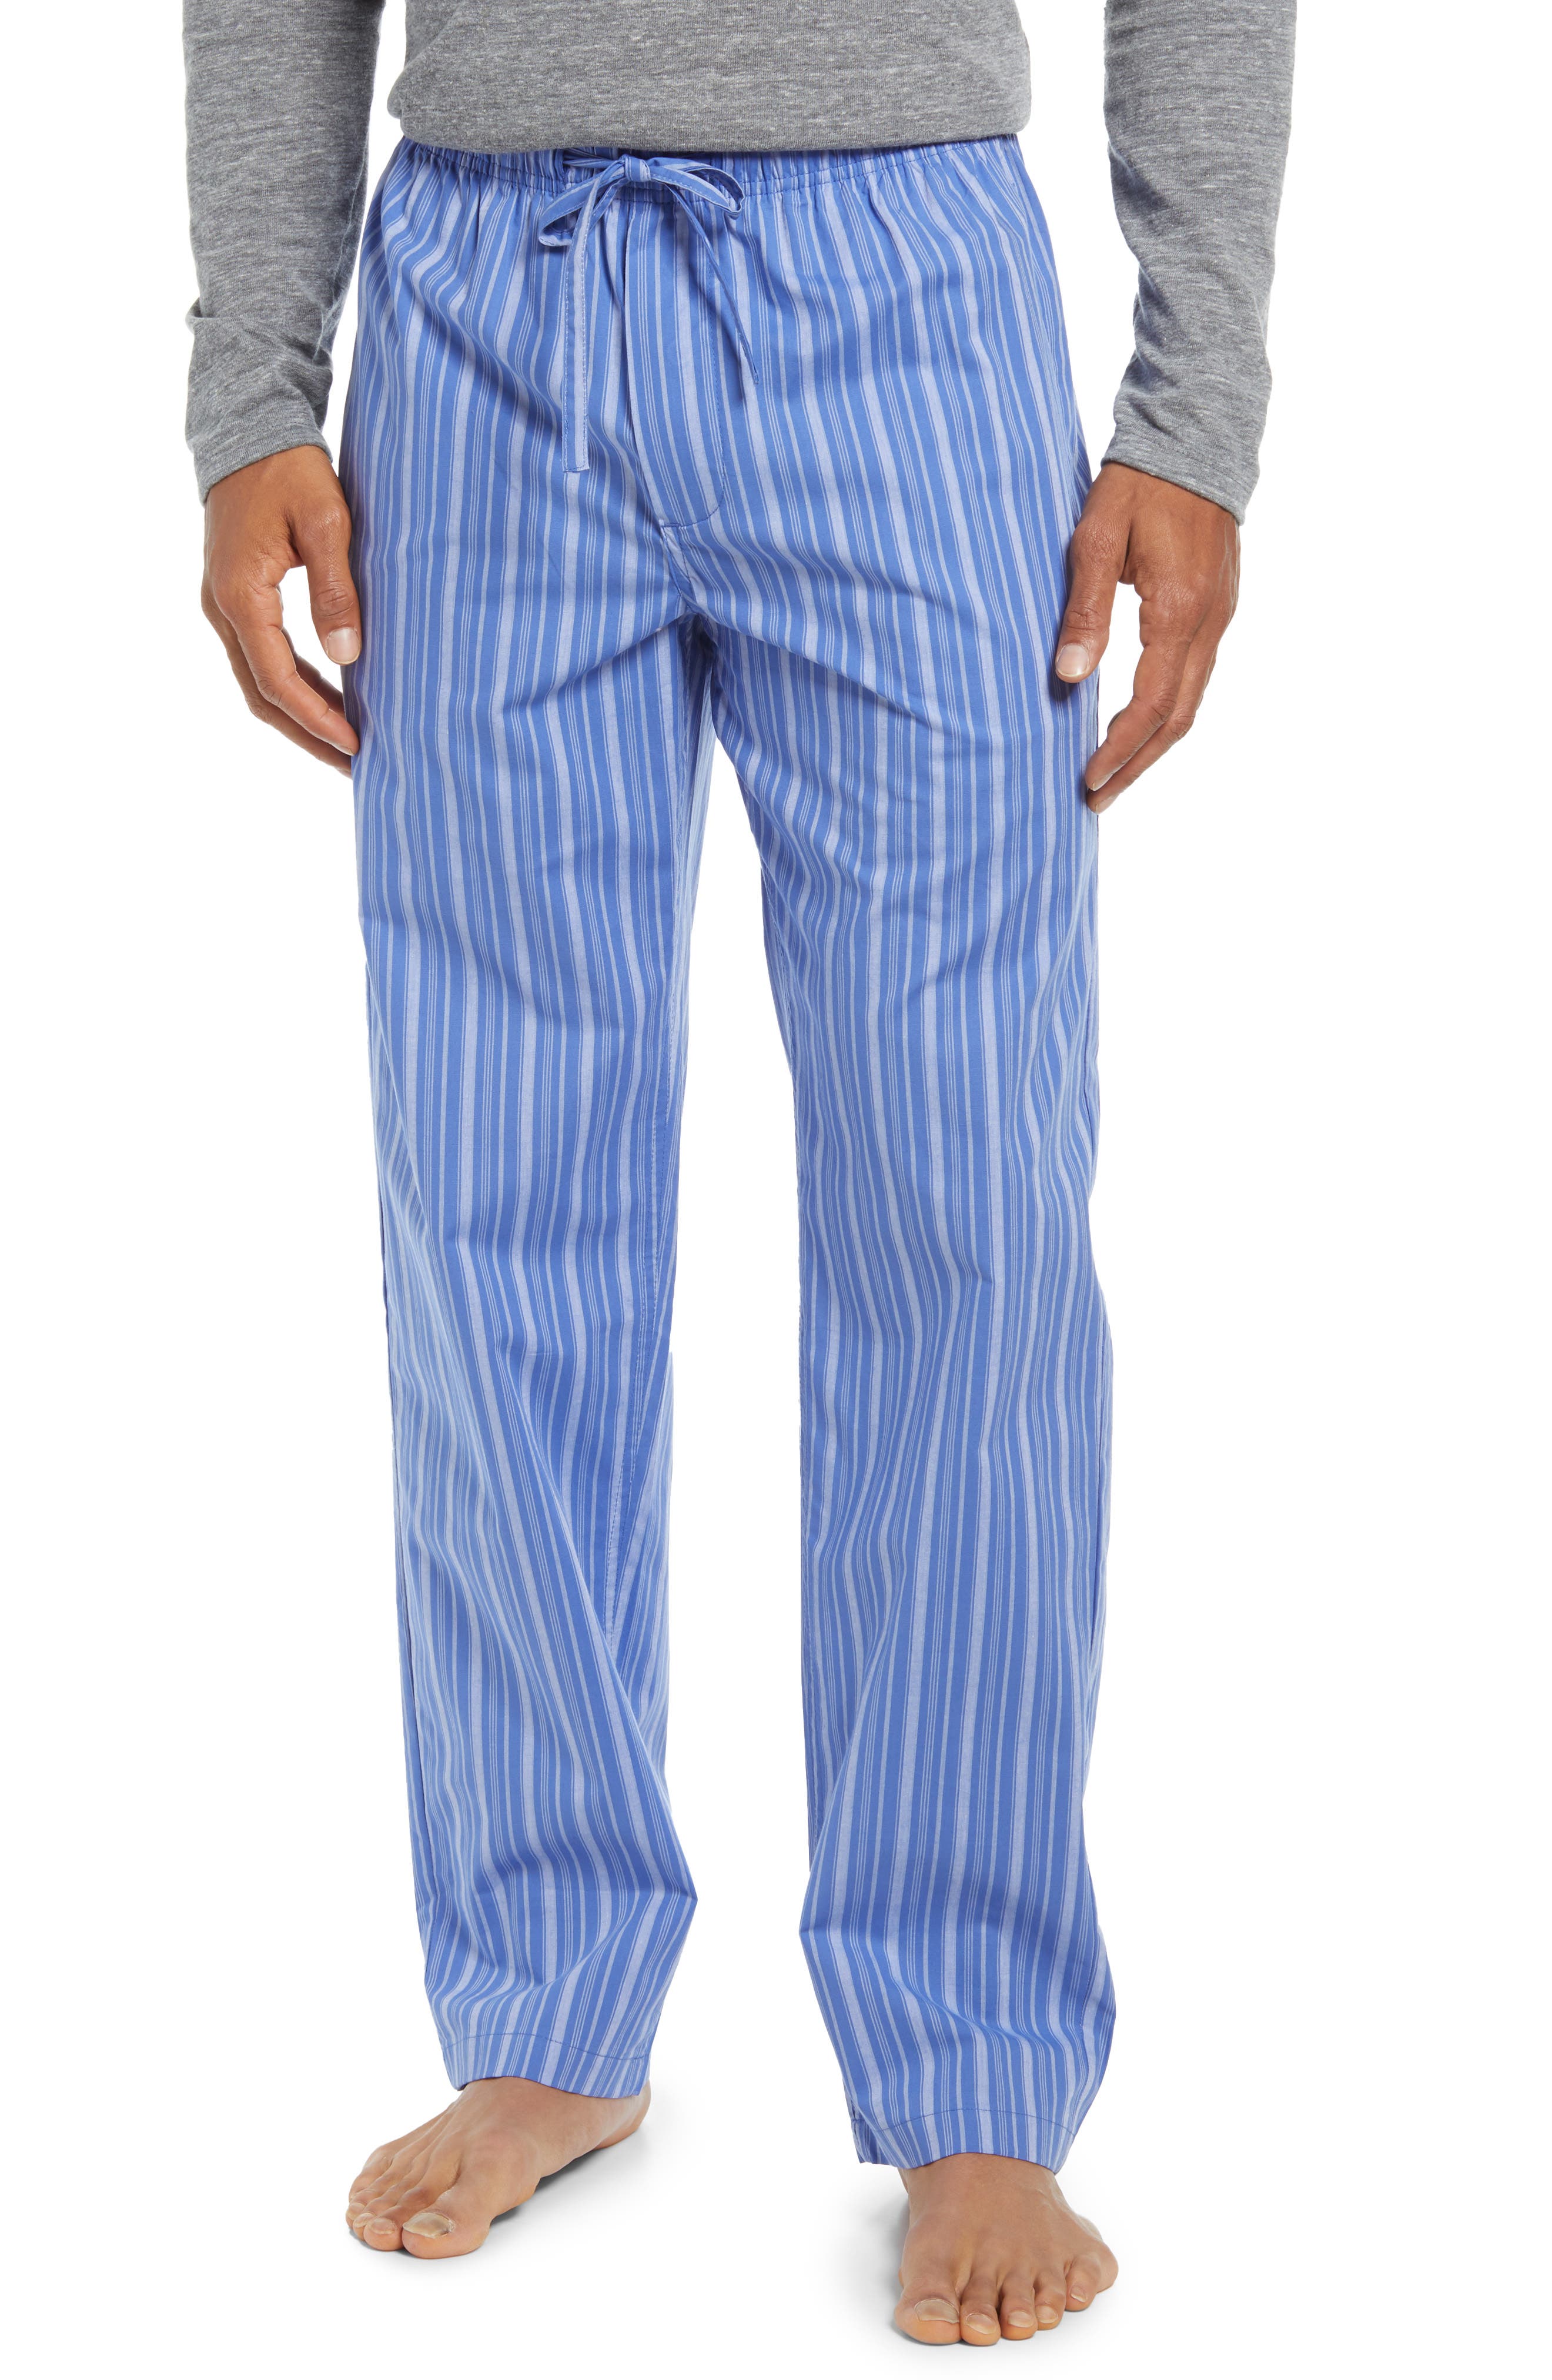 $60 Club Room Mens Pajamas Pjs Fleece Lounge Pants Blue Solid Sleepwear S